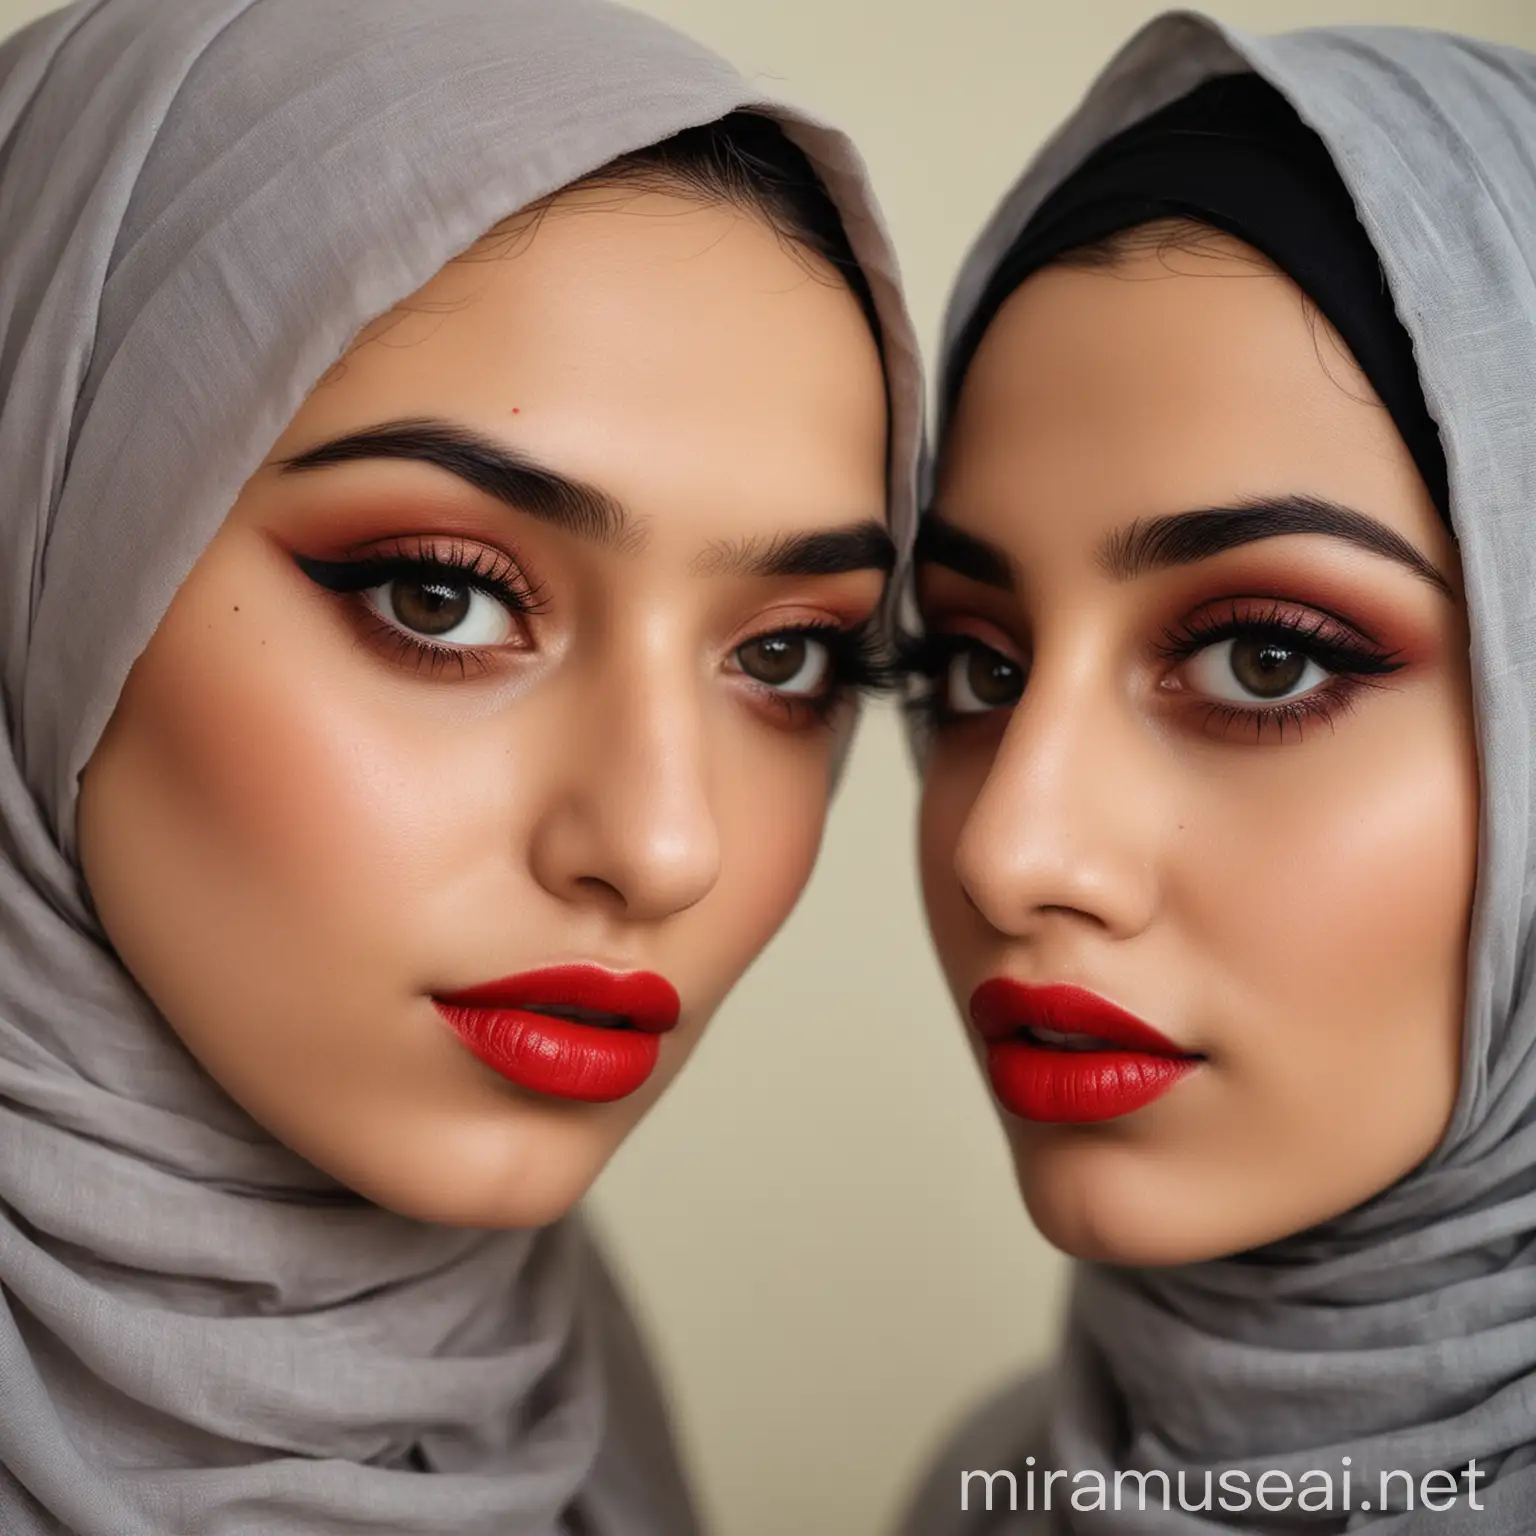 دو دختر زیبای حجابی ایرانی با چشم‌های زیبا و بزرگ و سیاه، و لب‌های سرخ و زیبا، لب یکدیگر را می چوشد، و رگ‌های روی‌شان نمایان است